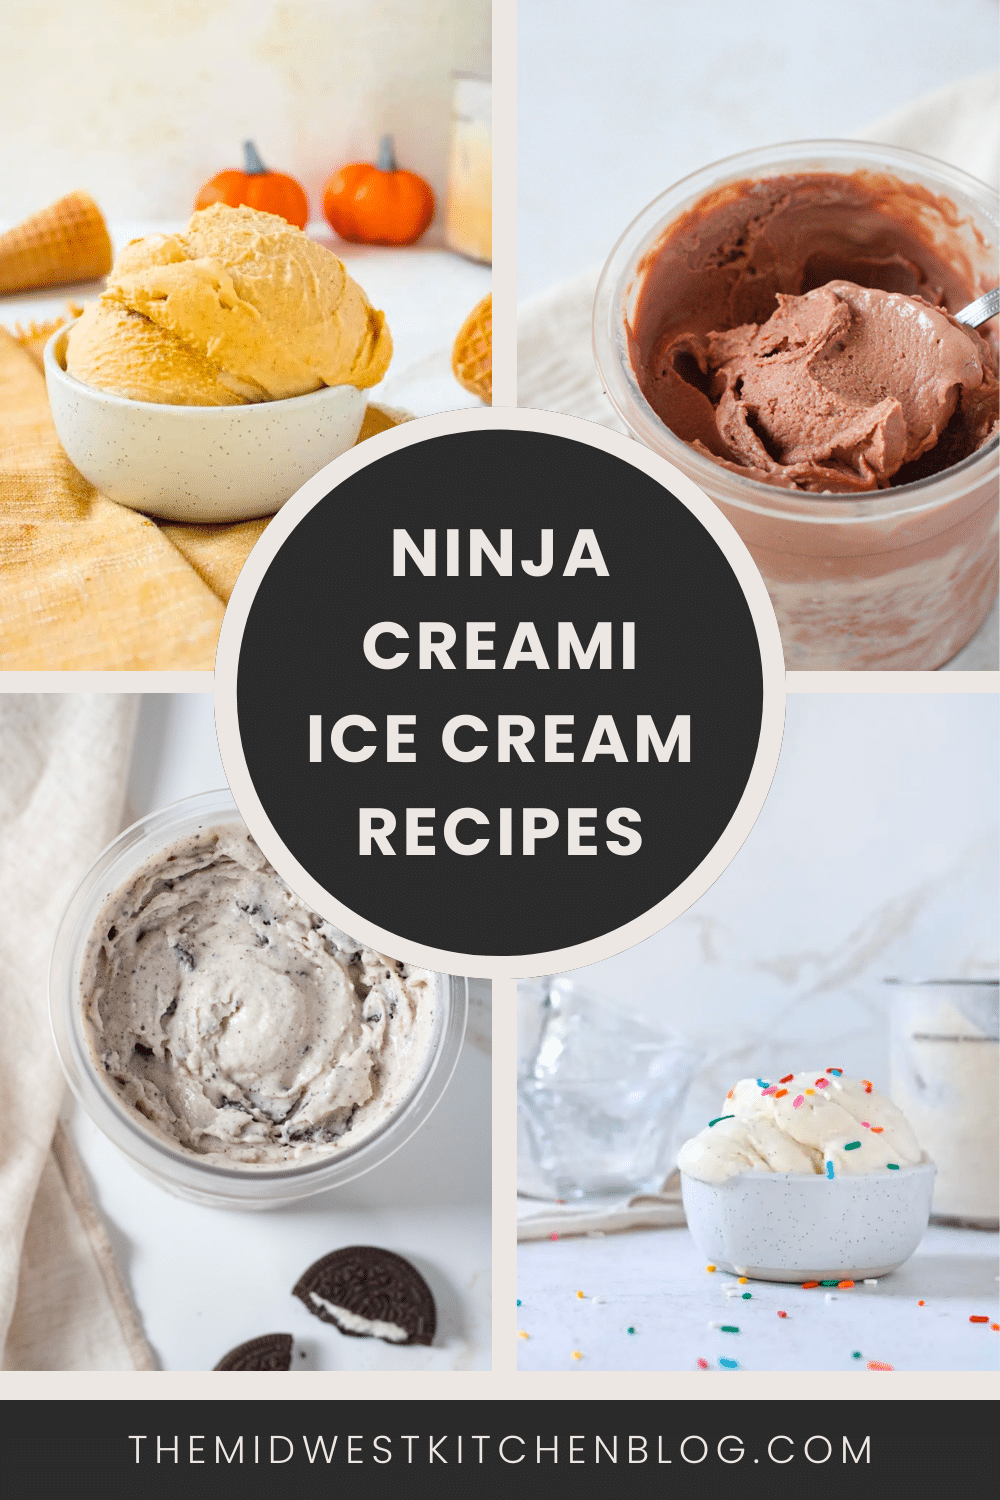 Ninja Creami Ice Cream Recipes.